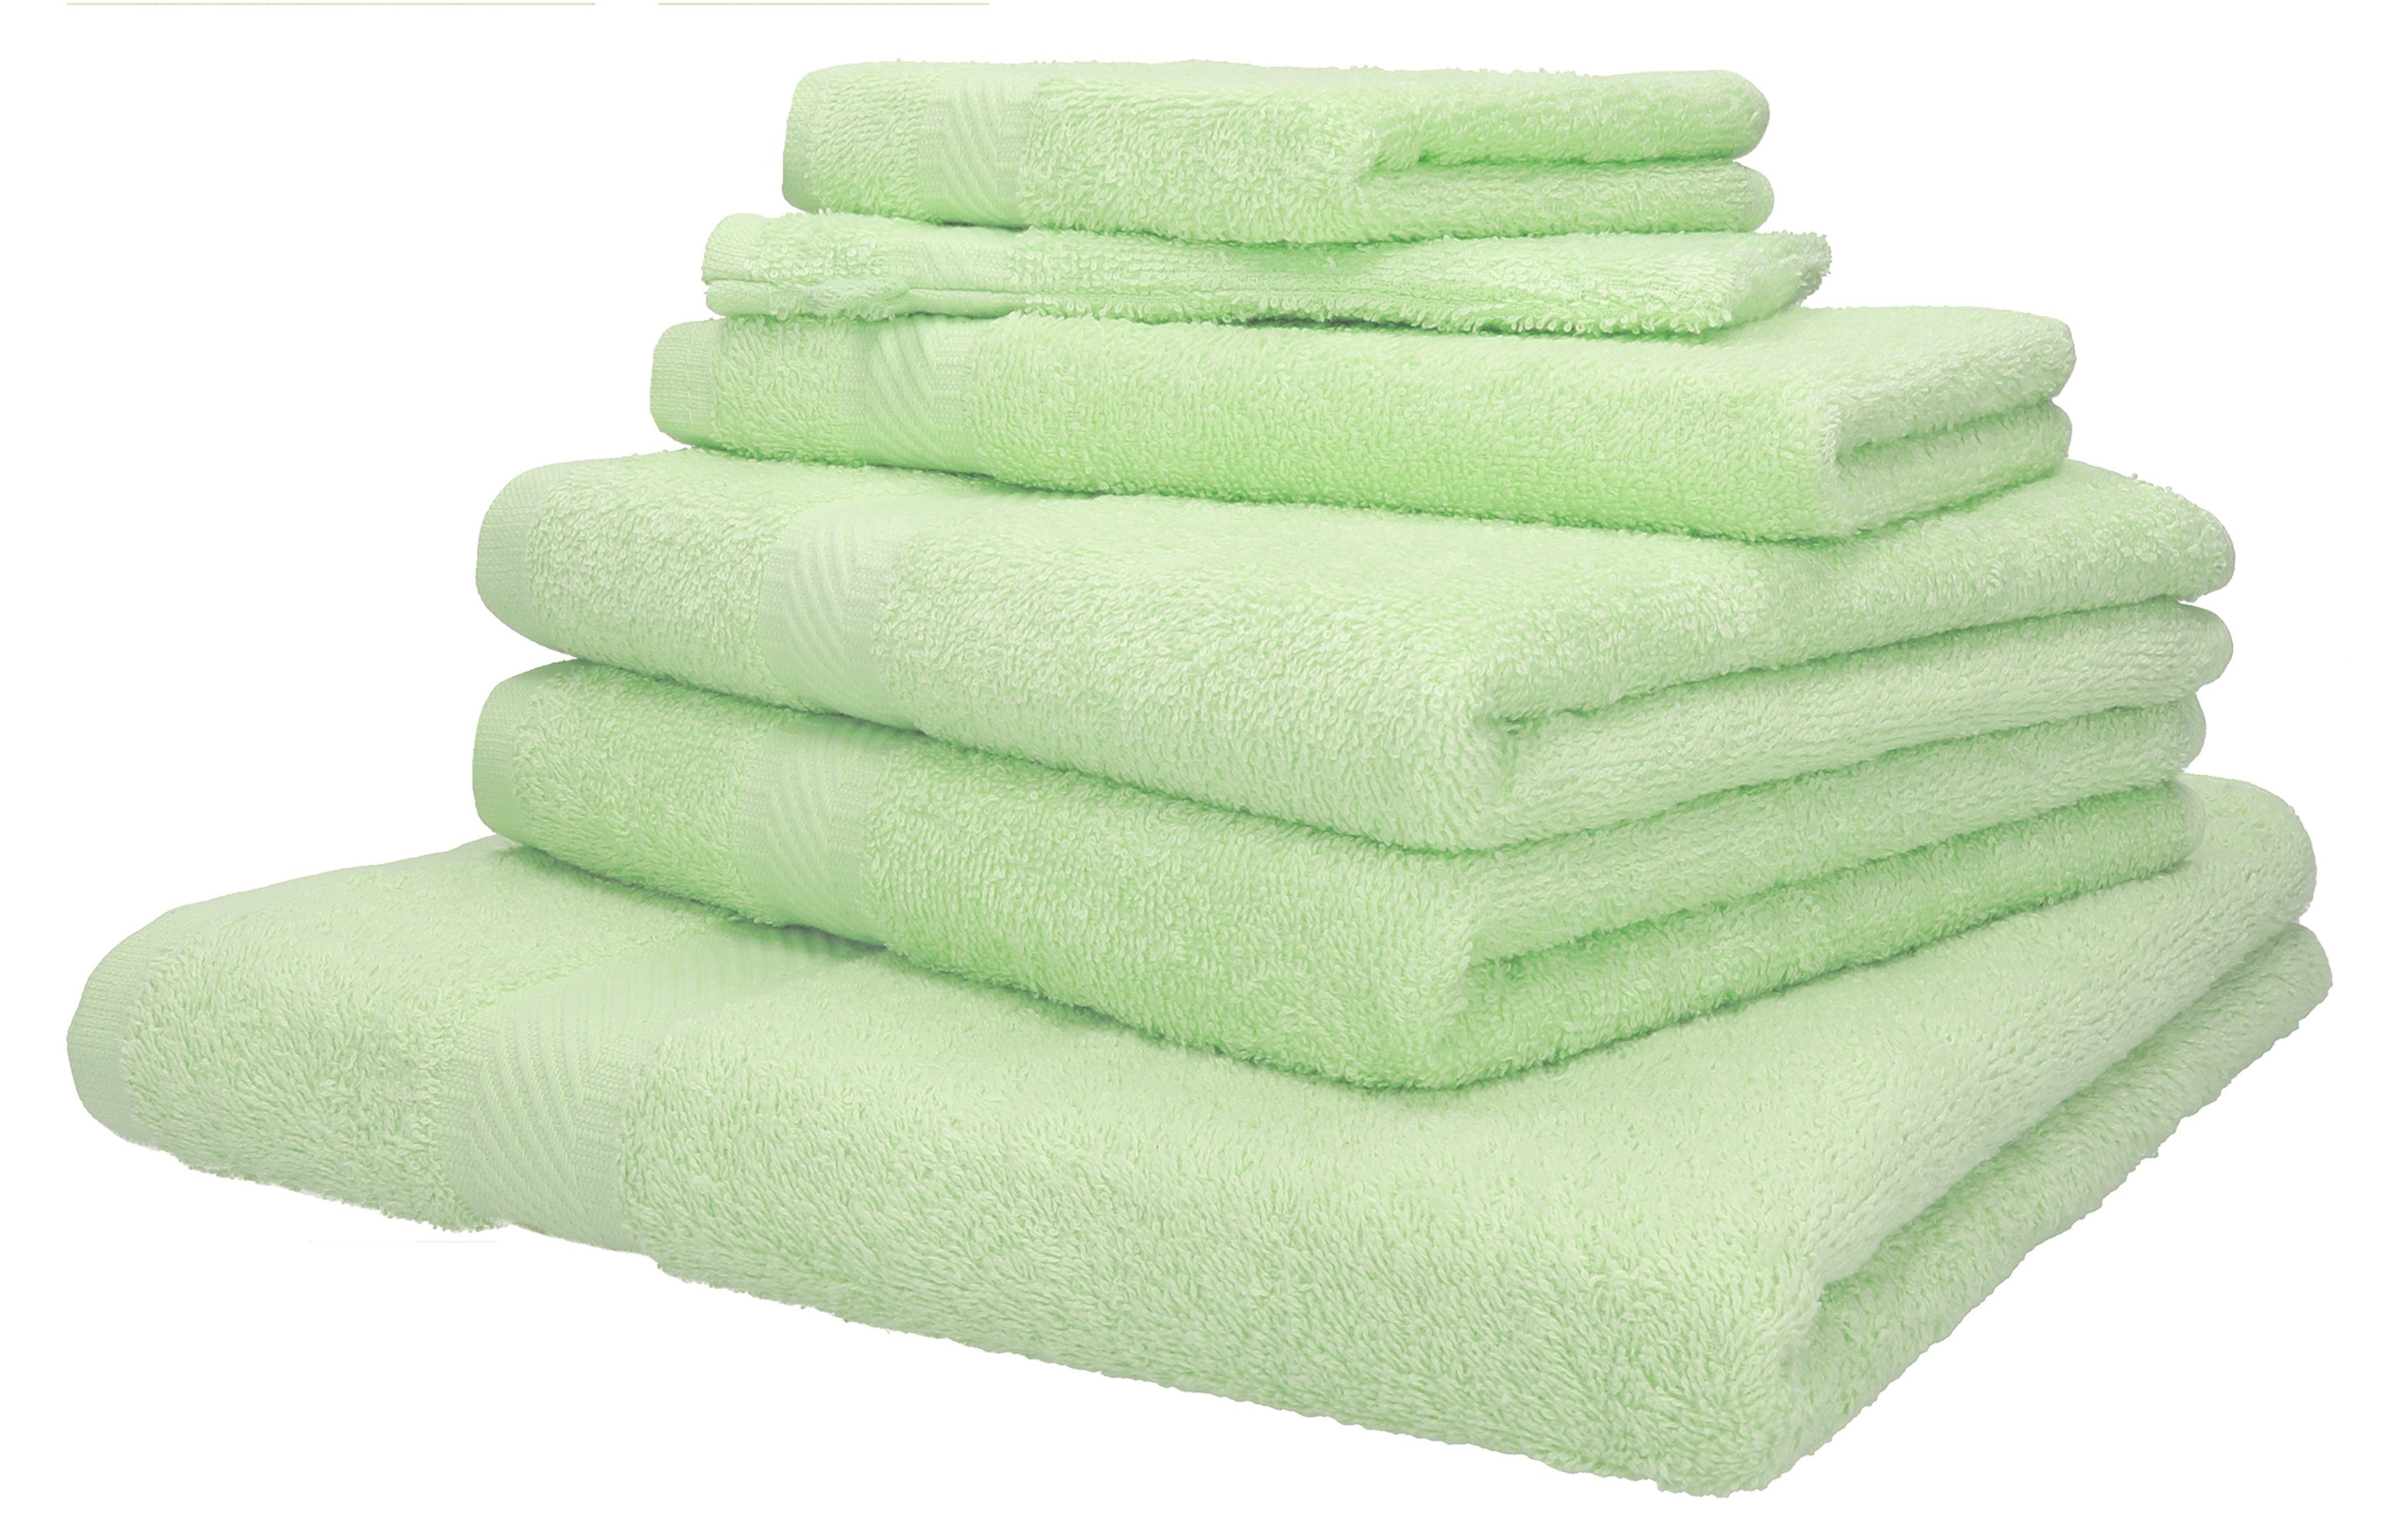 Betz Handtuch Set Palermo 6 tlg. in verschiedenen Farben, 100% Baumwolle grün